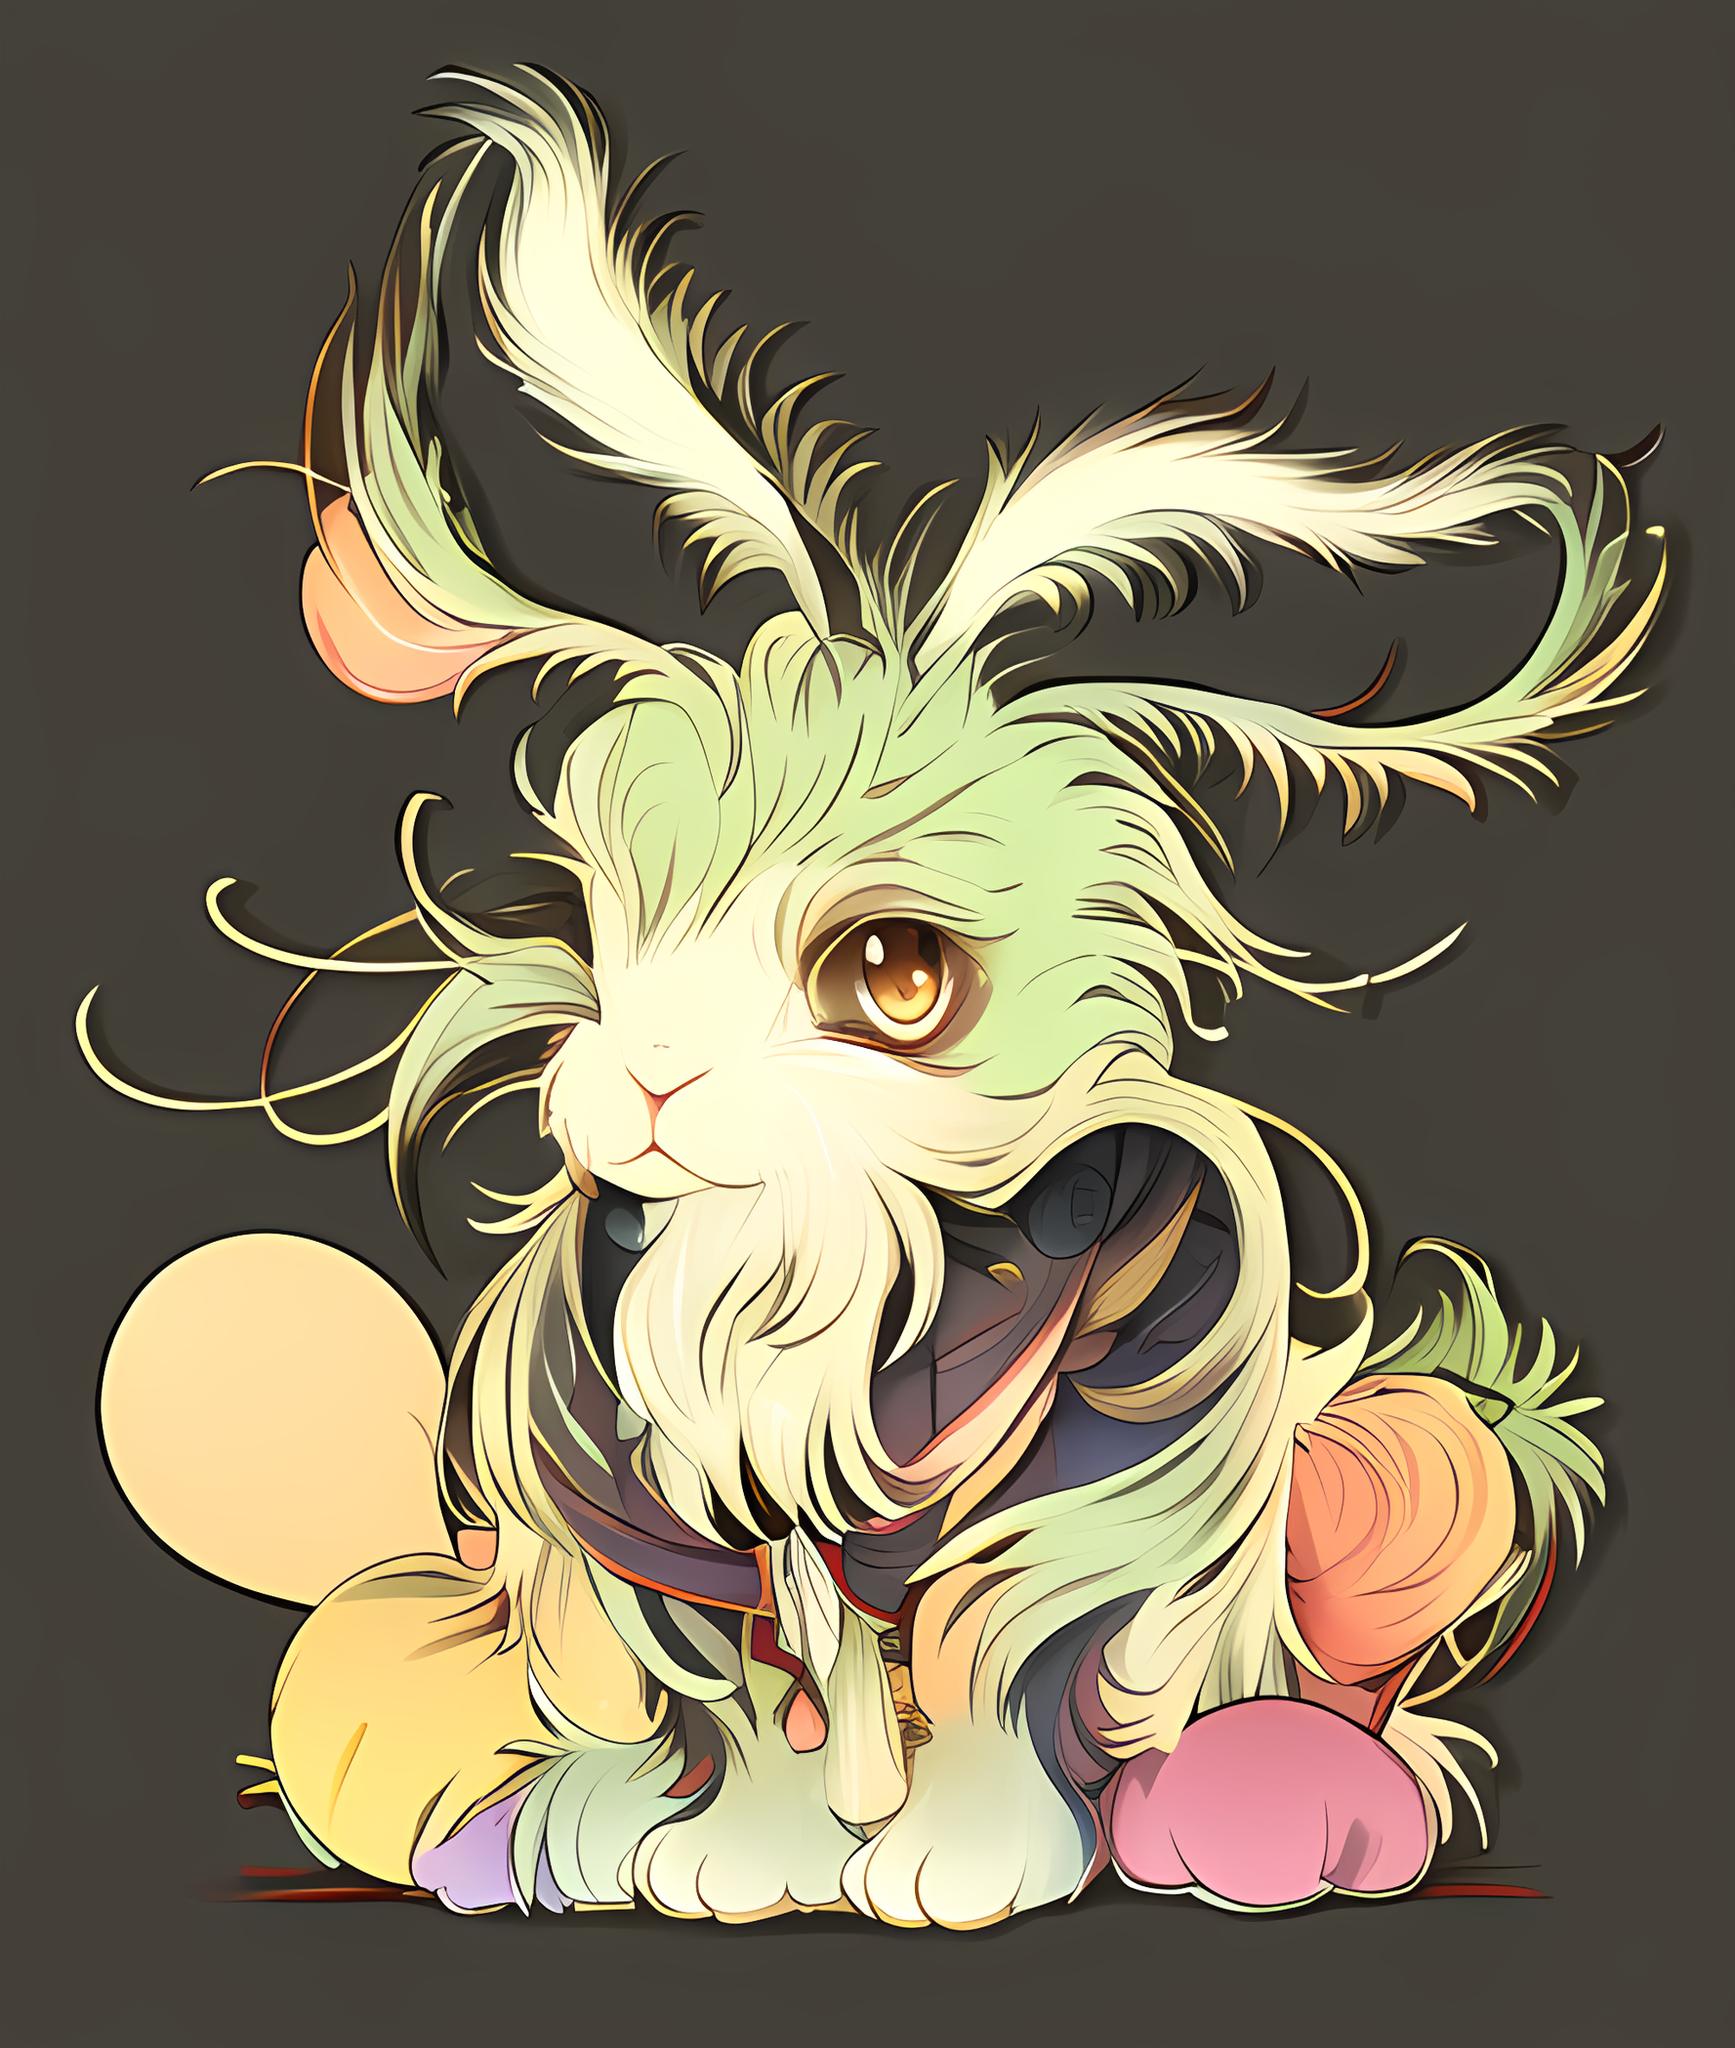 一只兔子